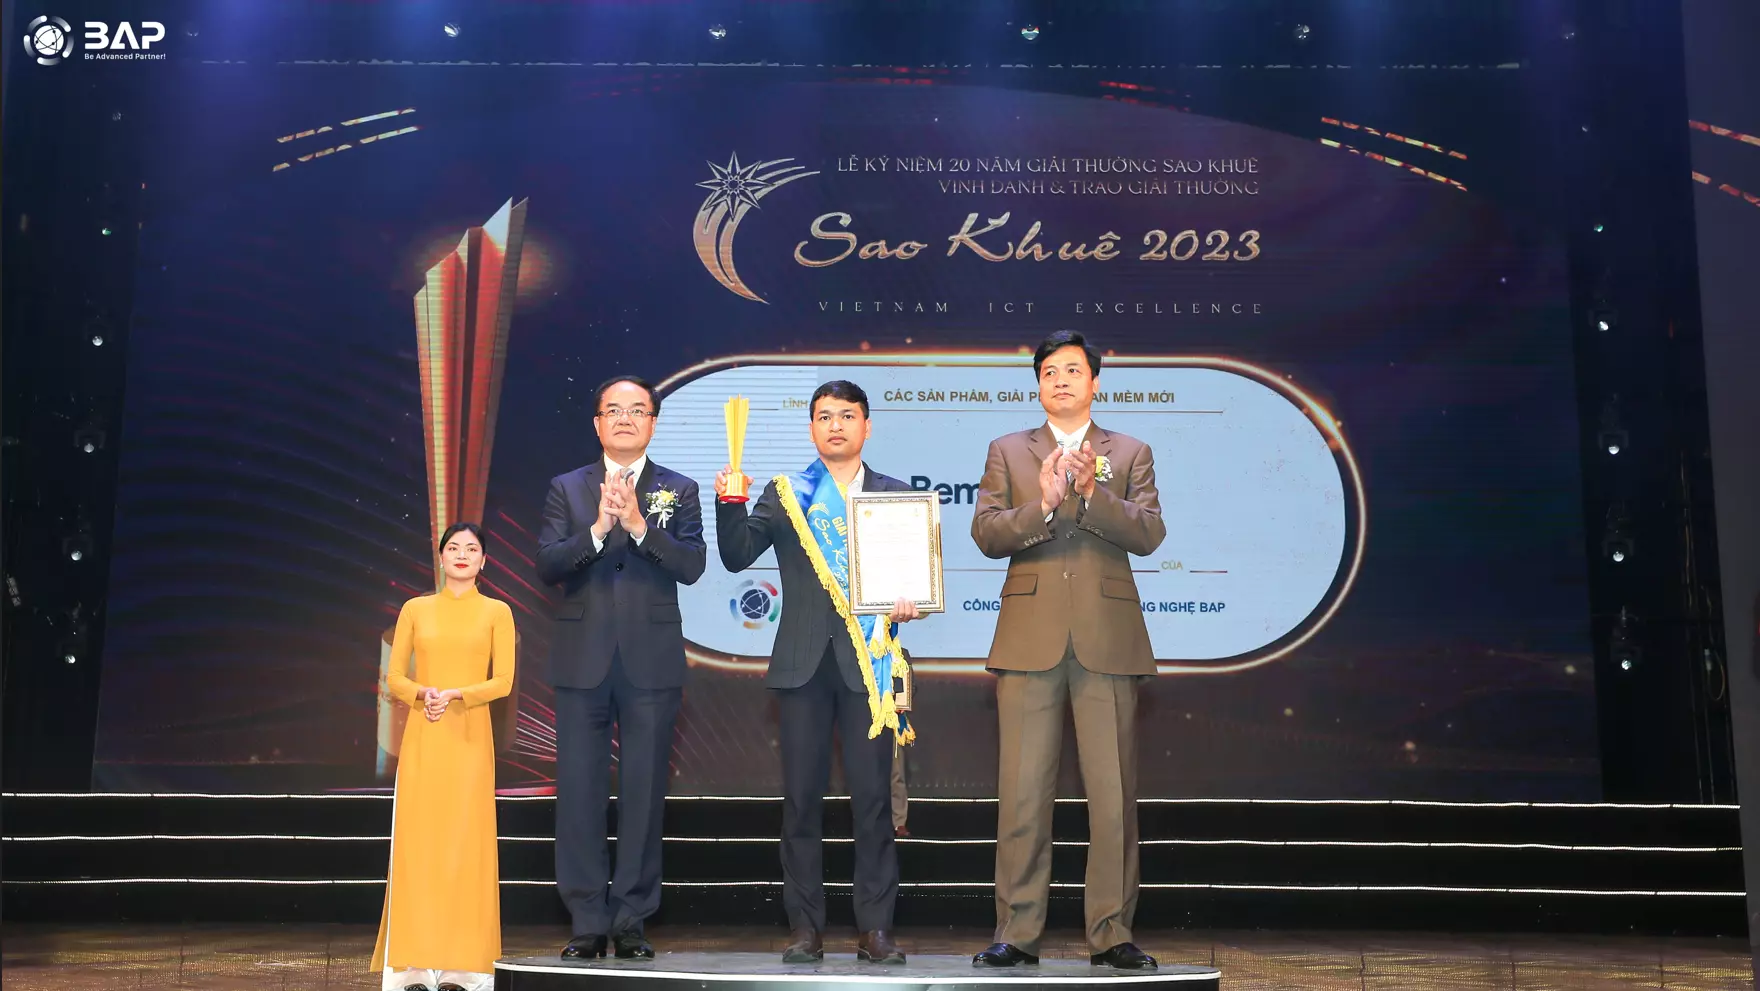 BAP ベトナムのBEMO CLOUD製品がSAO KHUE AWARD 2023で表彰されました。